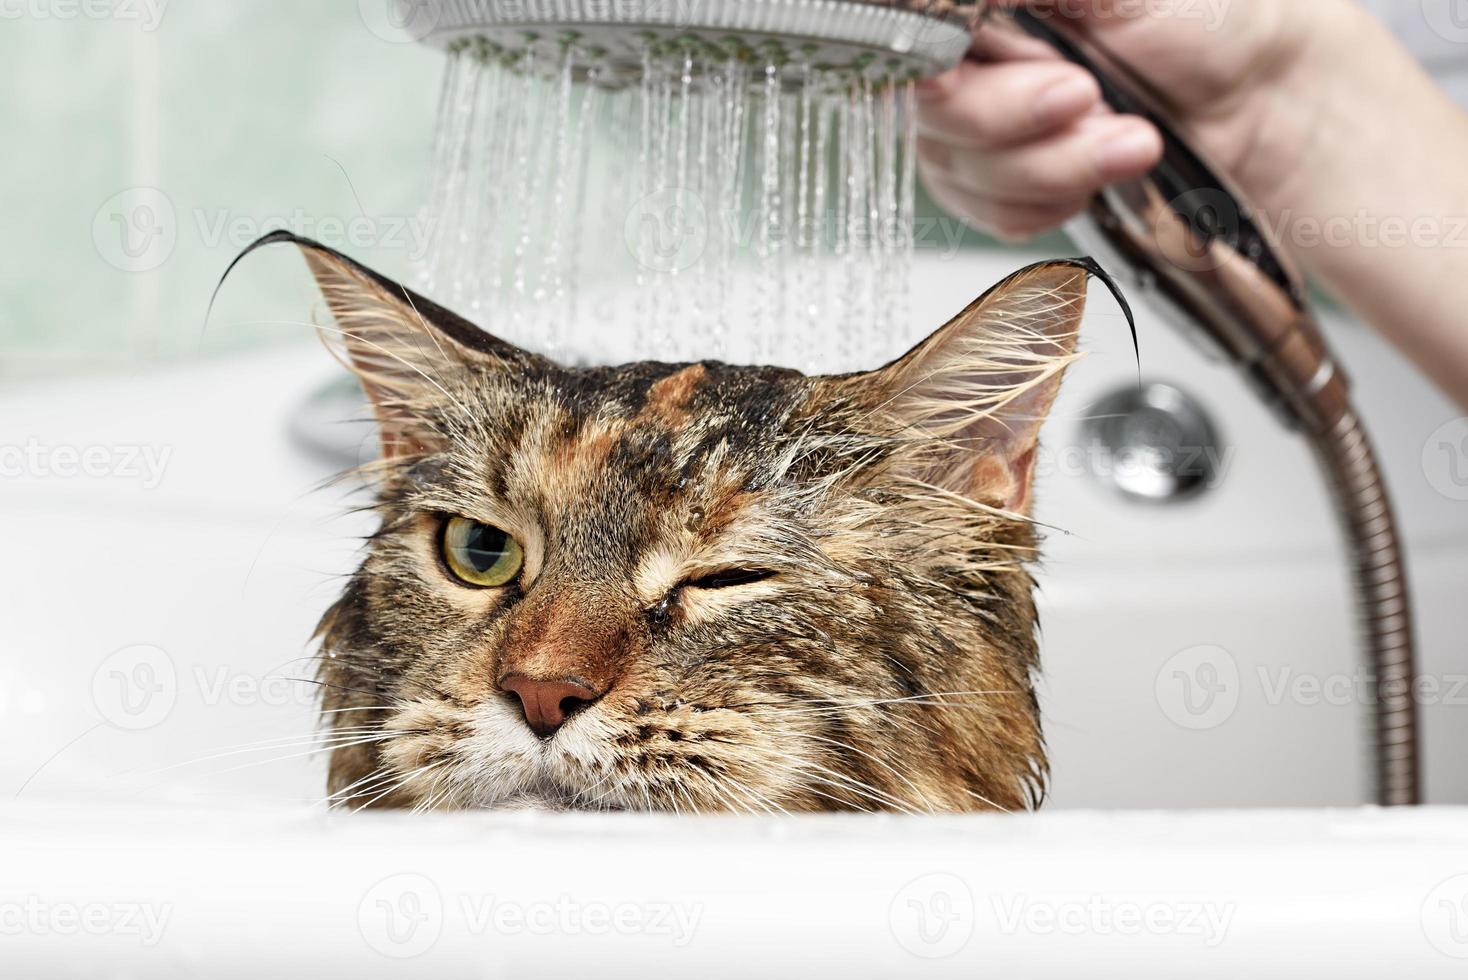 baño de gato gato mojado foto